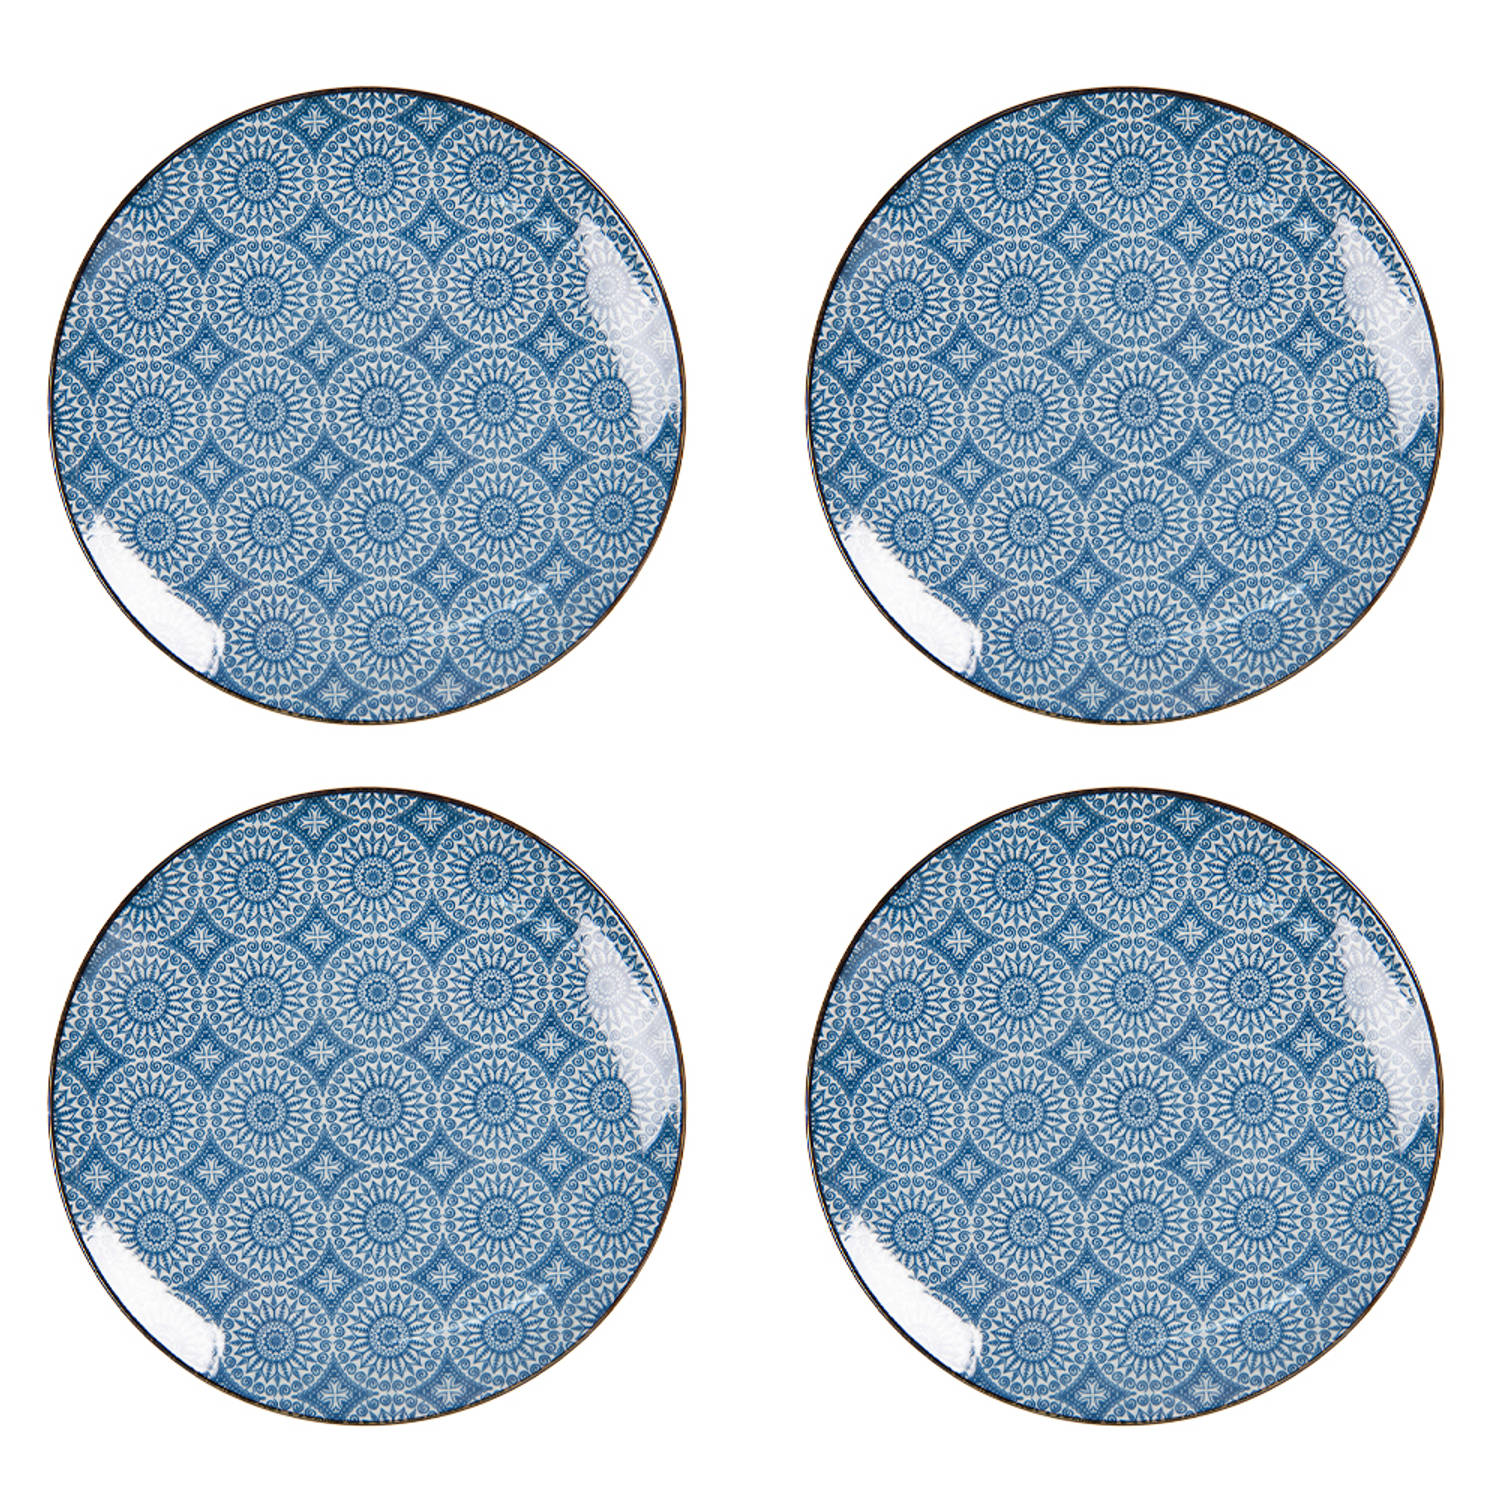 HAES DECO - Ontbijtborden set van 4 - Formaat Ø 21x1 cm - kleuren Blauw - Bedrukt Aardewerk - Collectie: Crafted Grace - Servies, kleine borden